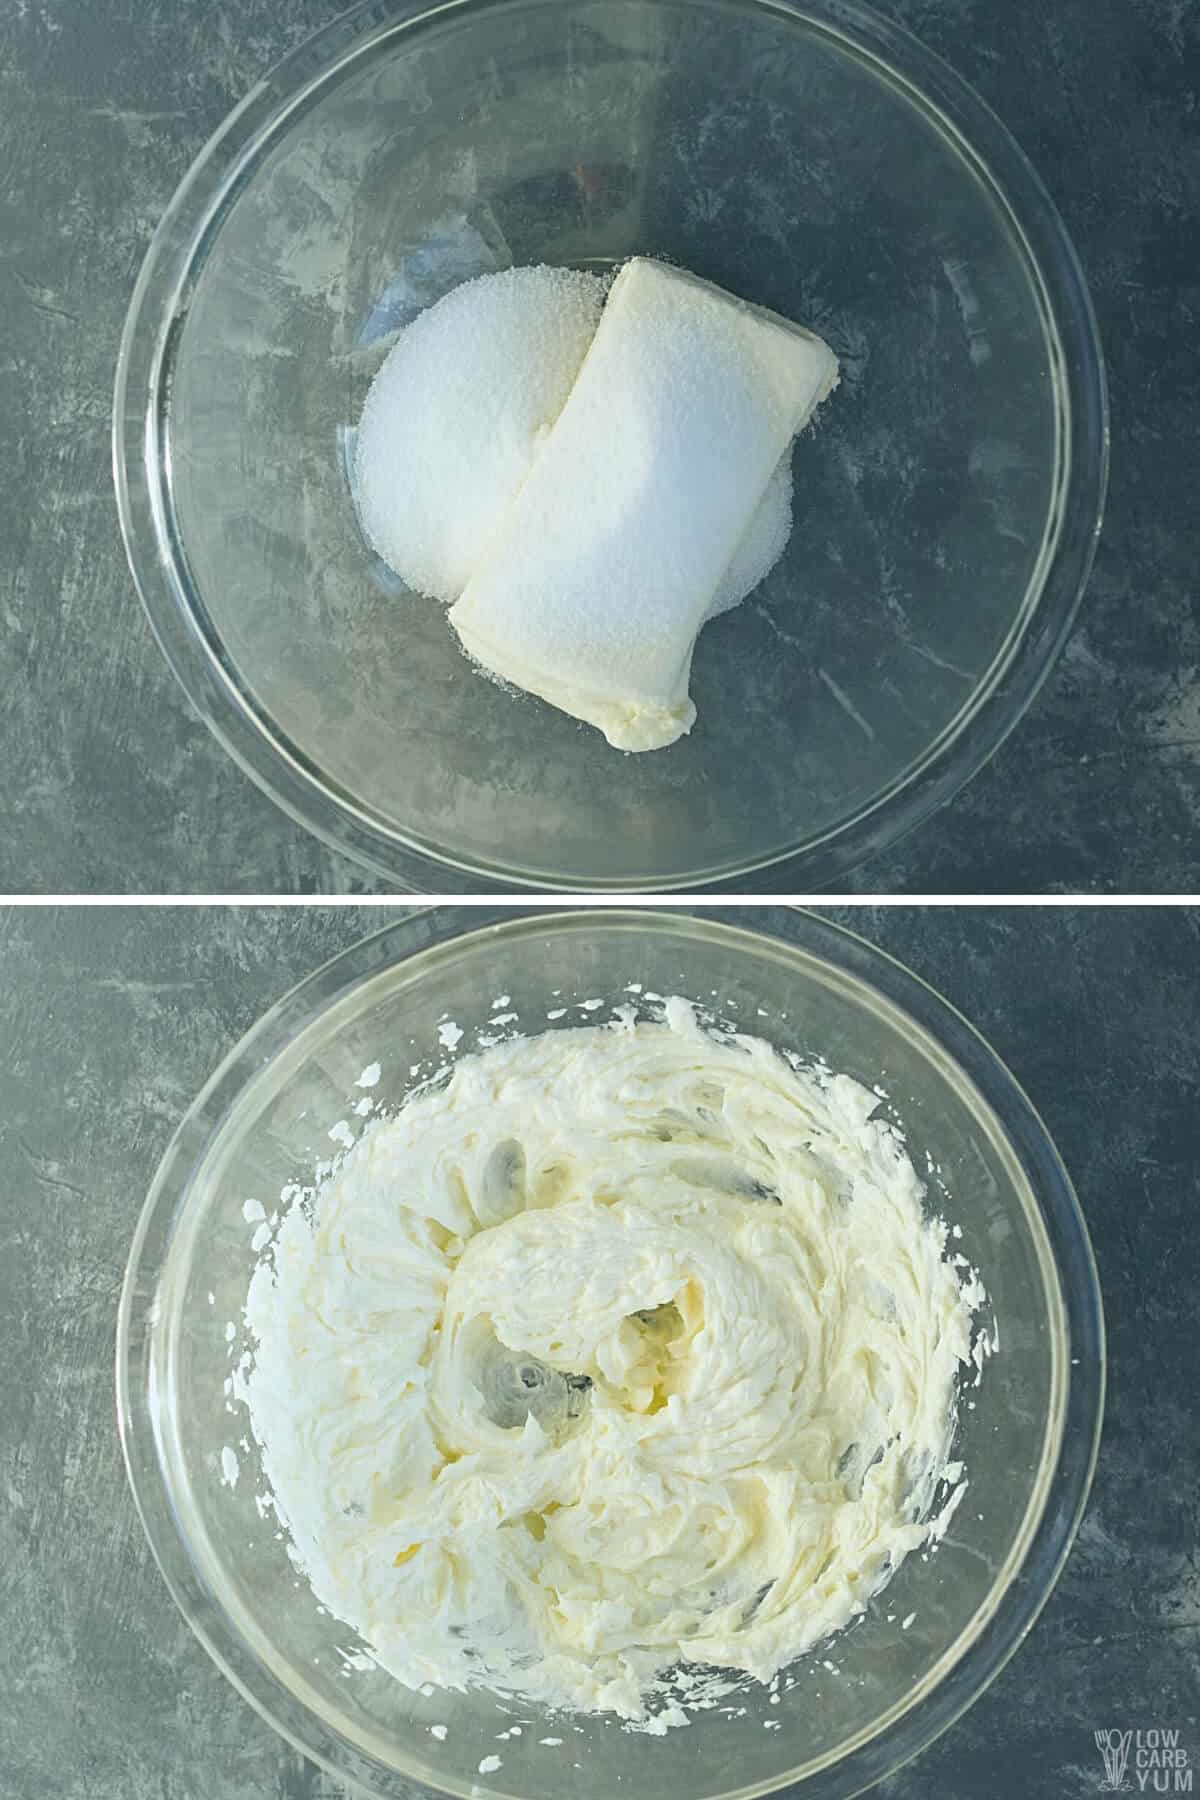 blending cream cheese and sweetener